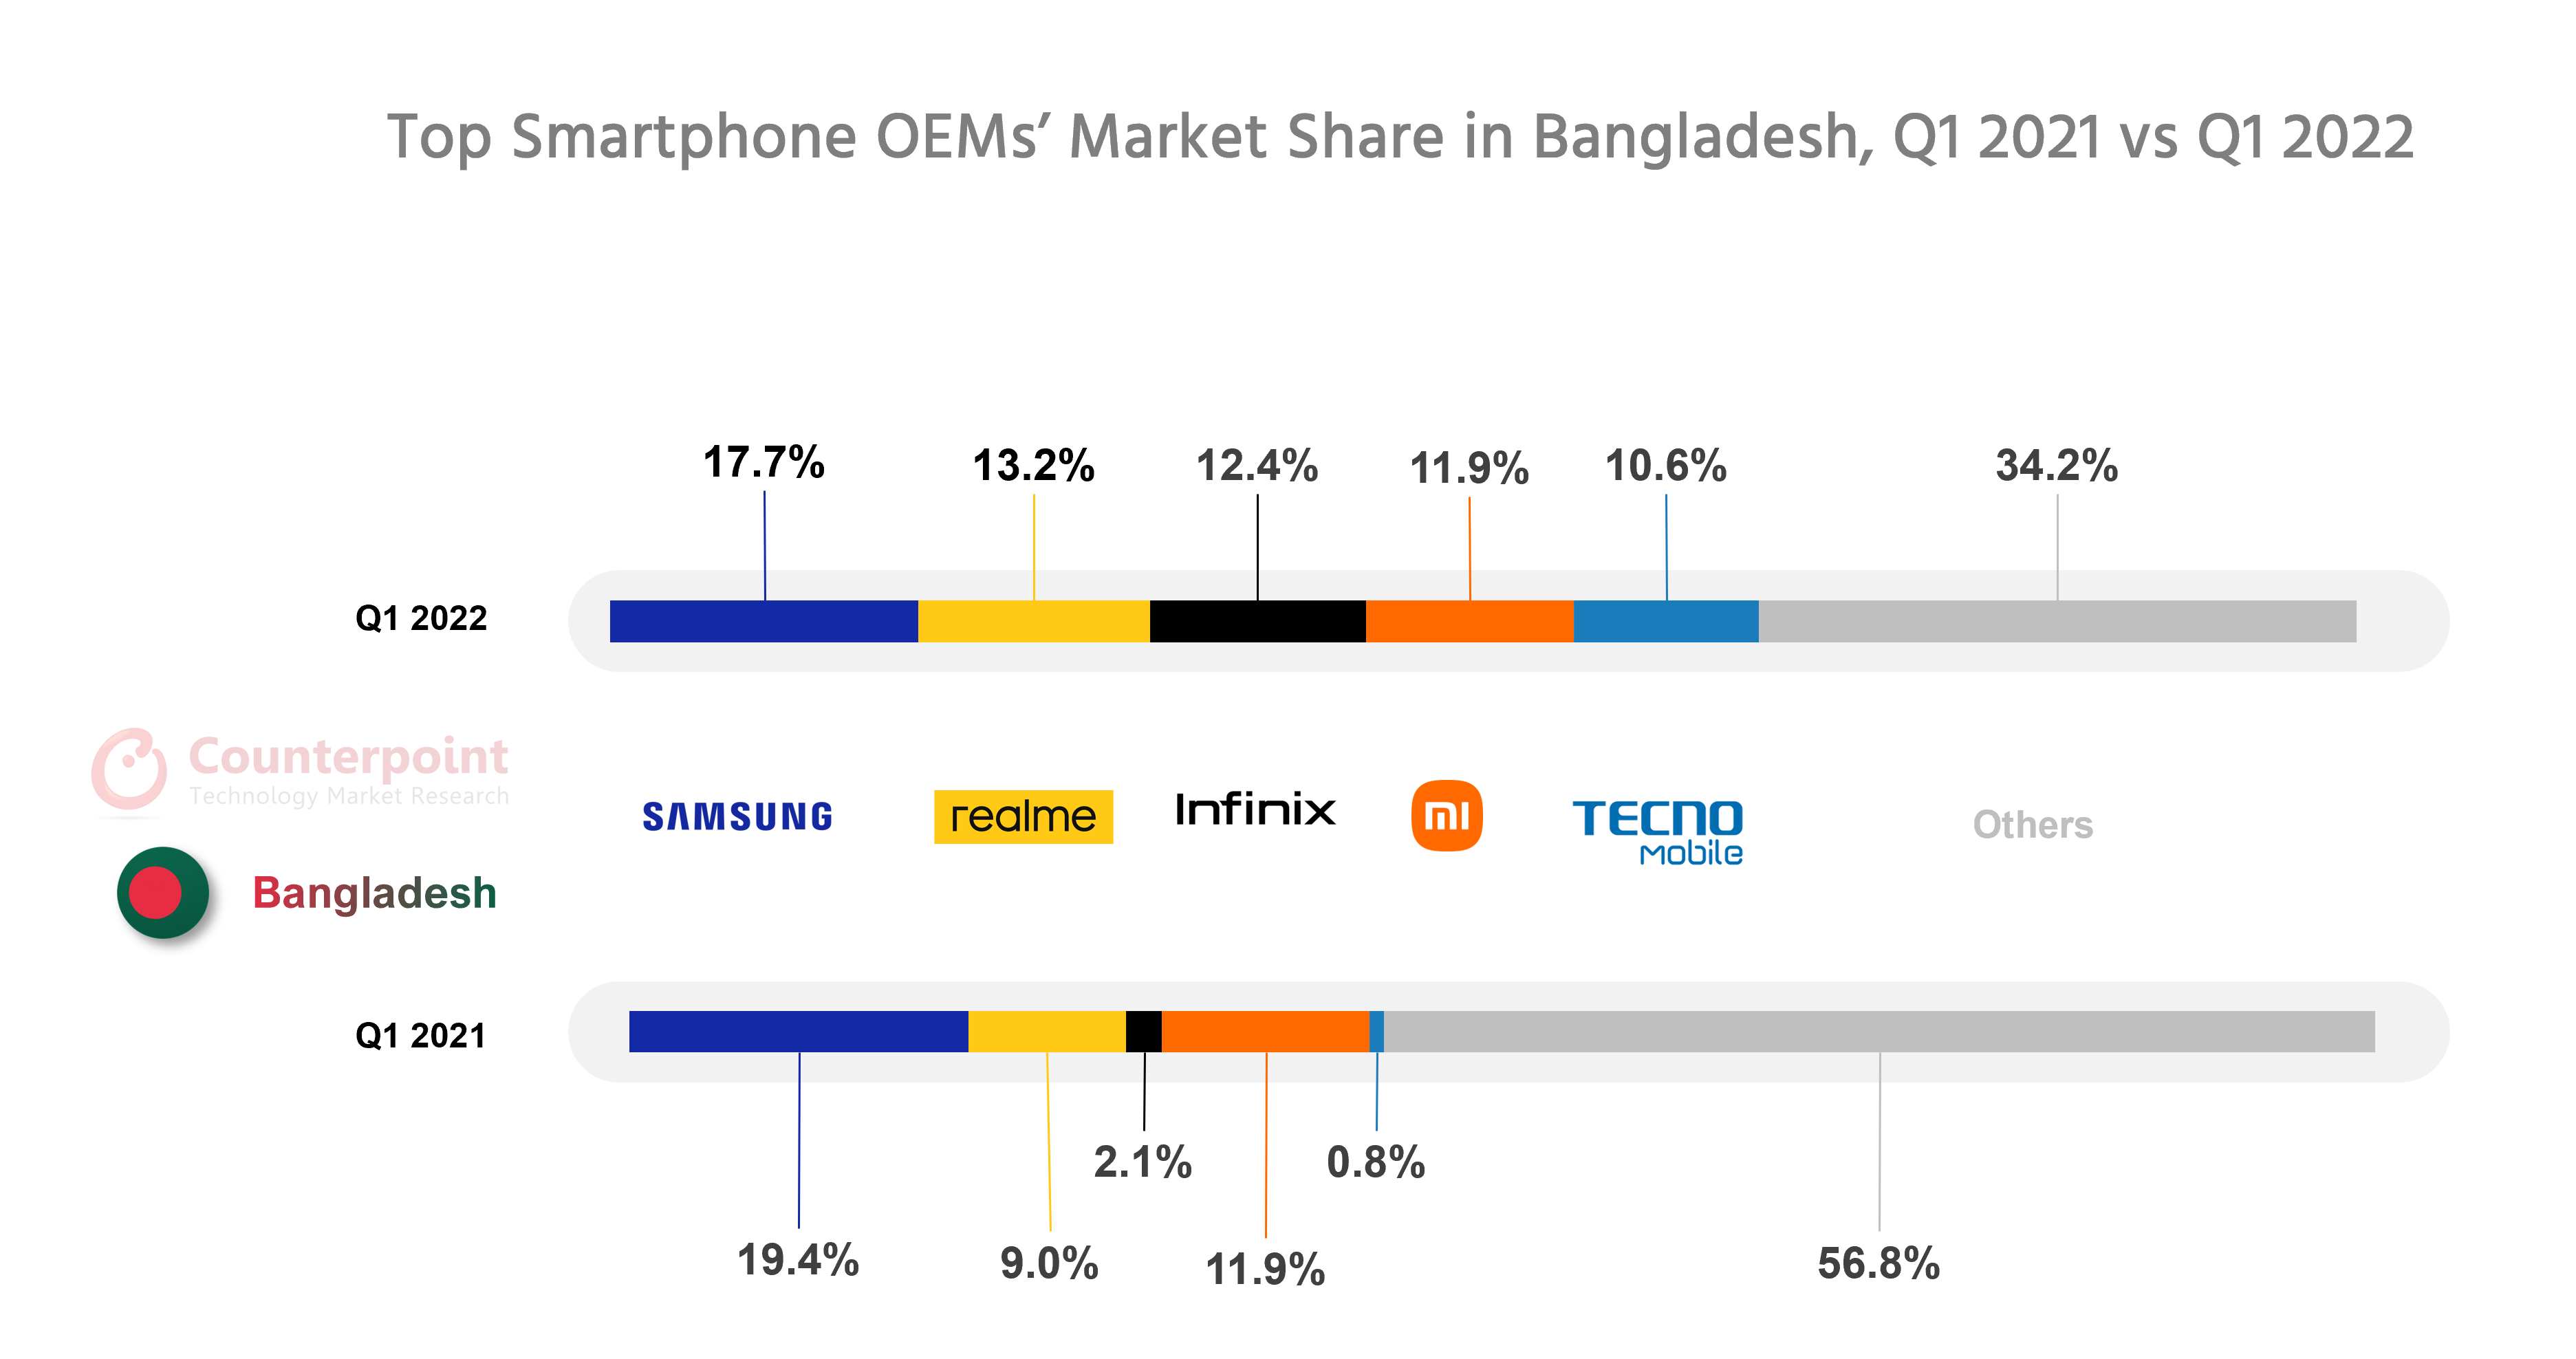 顶级智能手机OEM在孟加拉国Q1 2022与Q1 2021的市场份额